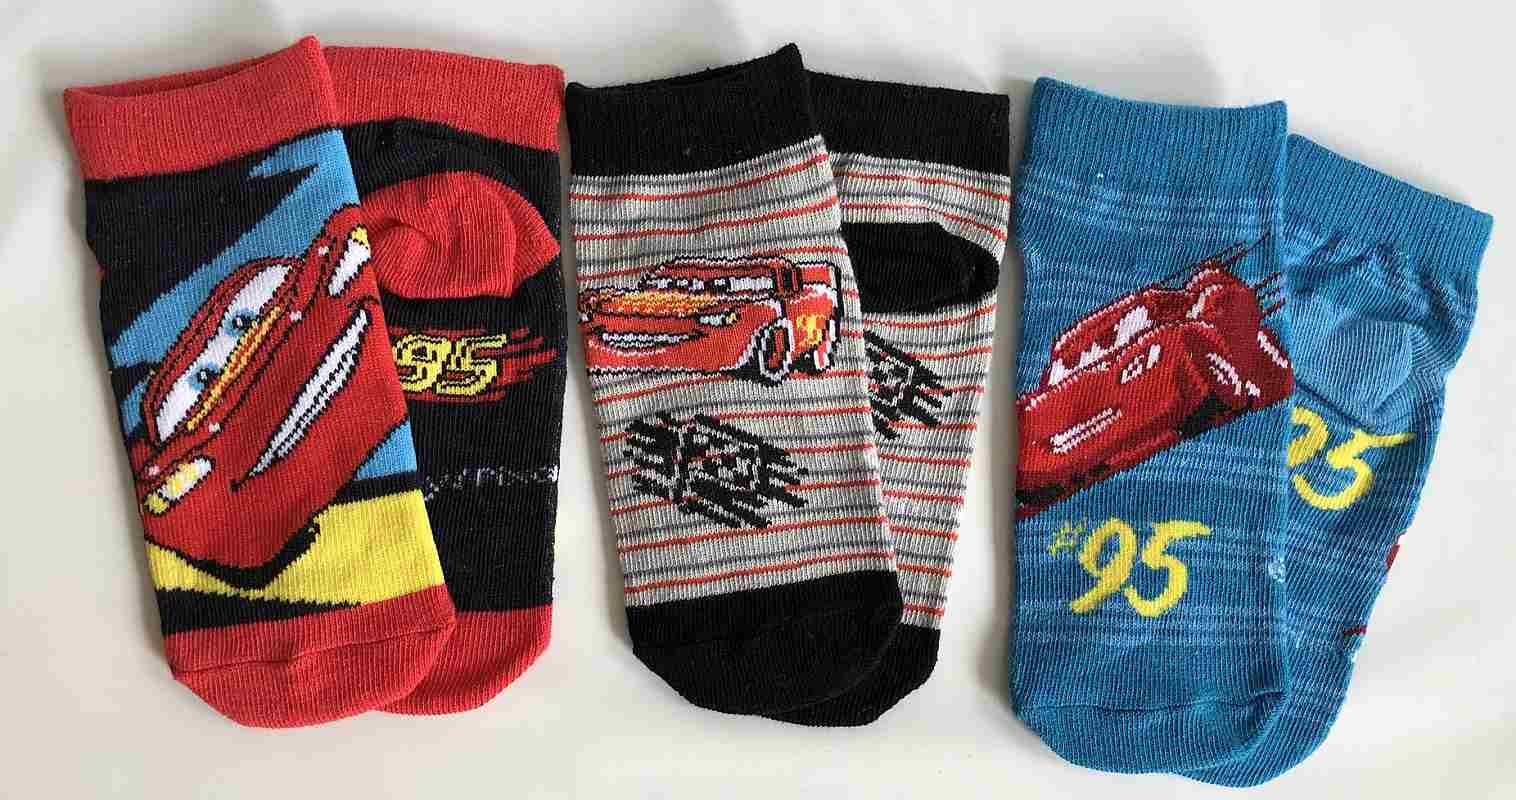 Kotníčkové ponožky 3v1 Cars vel. 19-22